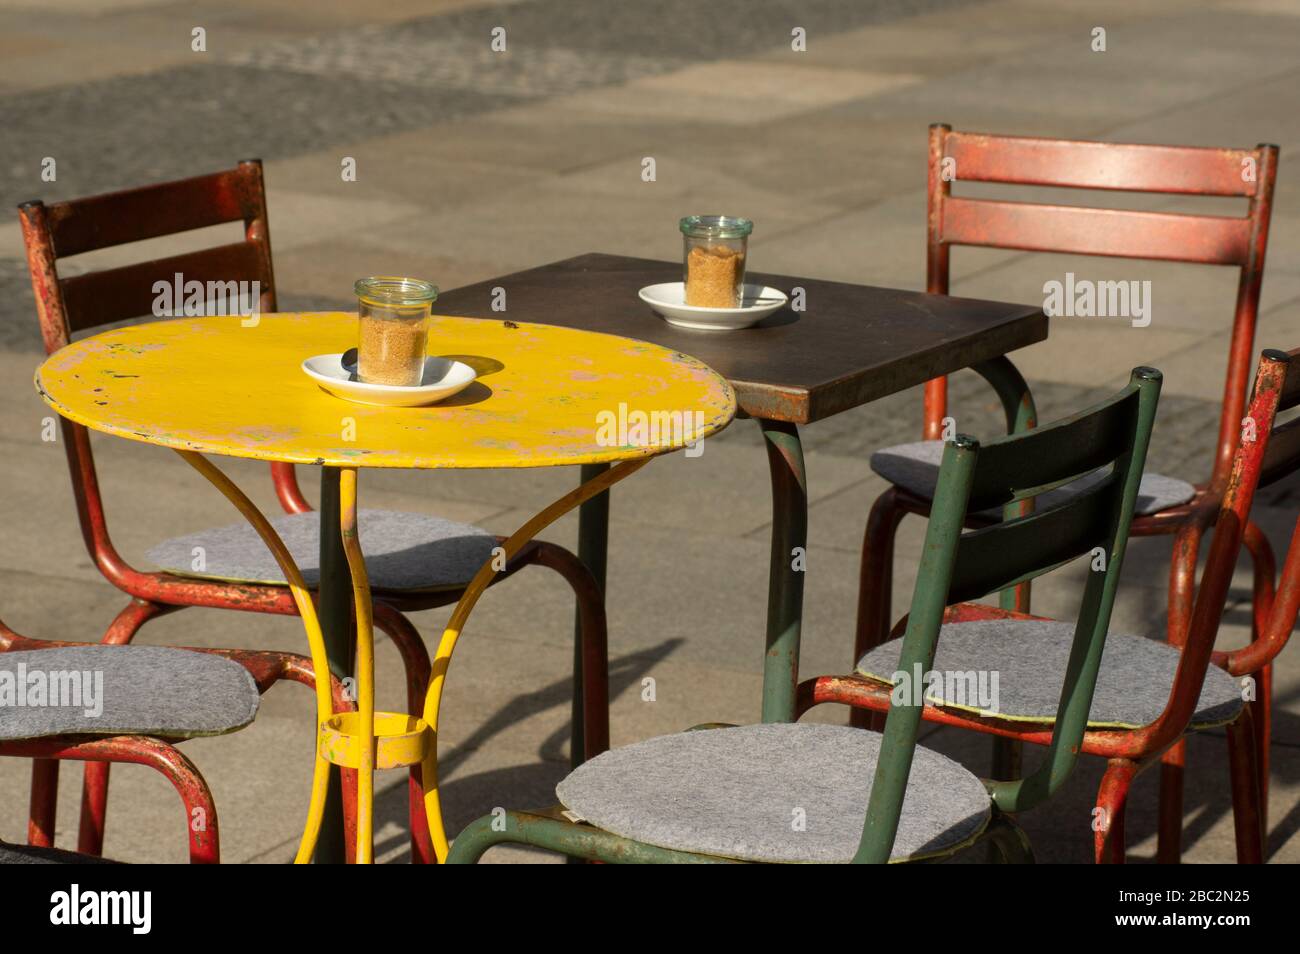 Ensemble coloré de sièges d'époque ou de grunge avec tables rondes et carrées en métal et chaises en métal dans la zone piétonne Banque D'Images